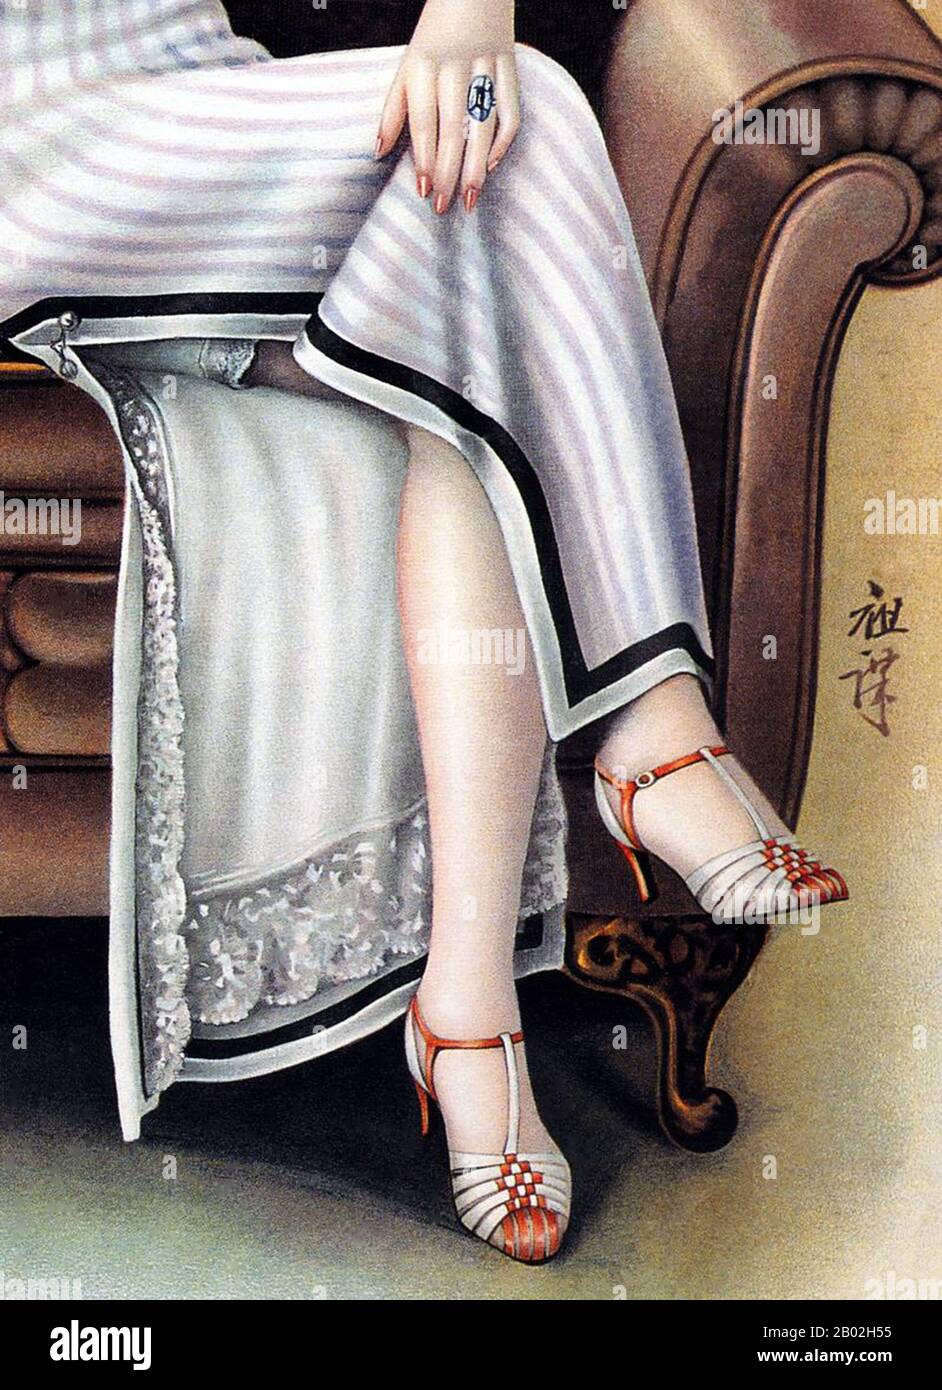 Die Fußbindung, obwohl sie nach dem Sturz des Qing Empiore im Jahr 1911 notorisch verboten war, wurde in einigen abgelegenen Gebieten noch einige Jahre unter der chinesischen Republik (1911-1949) fortgesetzt. Nicht so in Shanghai, immer der Arbitor moderner Geschmäcker und Mode. Als Folge davon hatten Mitte der 1930er Jahre Shanghais Zhejiang Road, Fujian Road und Nanjing Road mehr als einhundert Schuhgeschäfte zwischen sich, wobei hochqualifizierte Schuhmacher westliche Stile kopieren, darunter High Heels und Open Toe Lederschuhe, die beliebtesten unter diesen waren. Eine Shanghaier Frau, in qipao gekleidet und in hohen Fersen gehüllt, wurde zum ICO Stockfoto